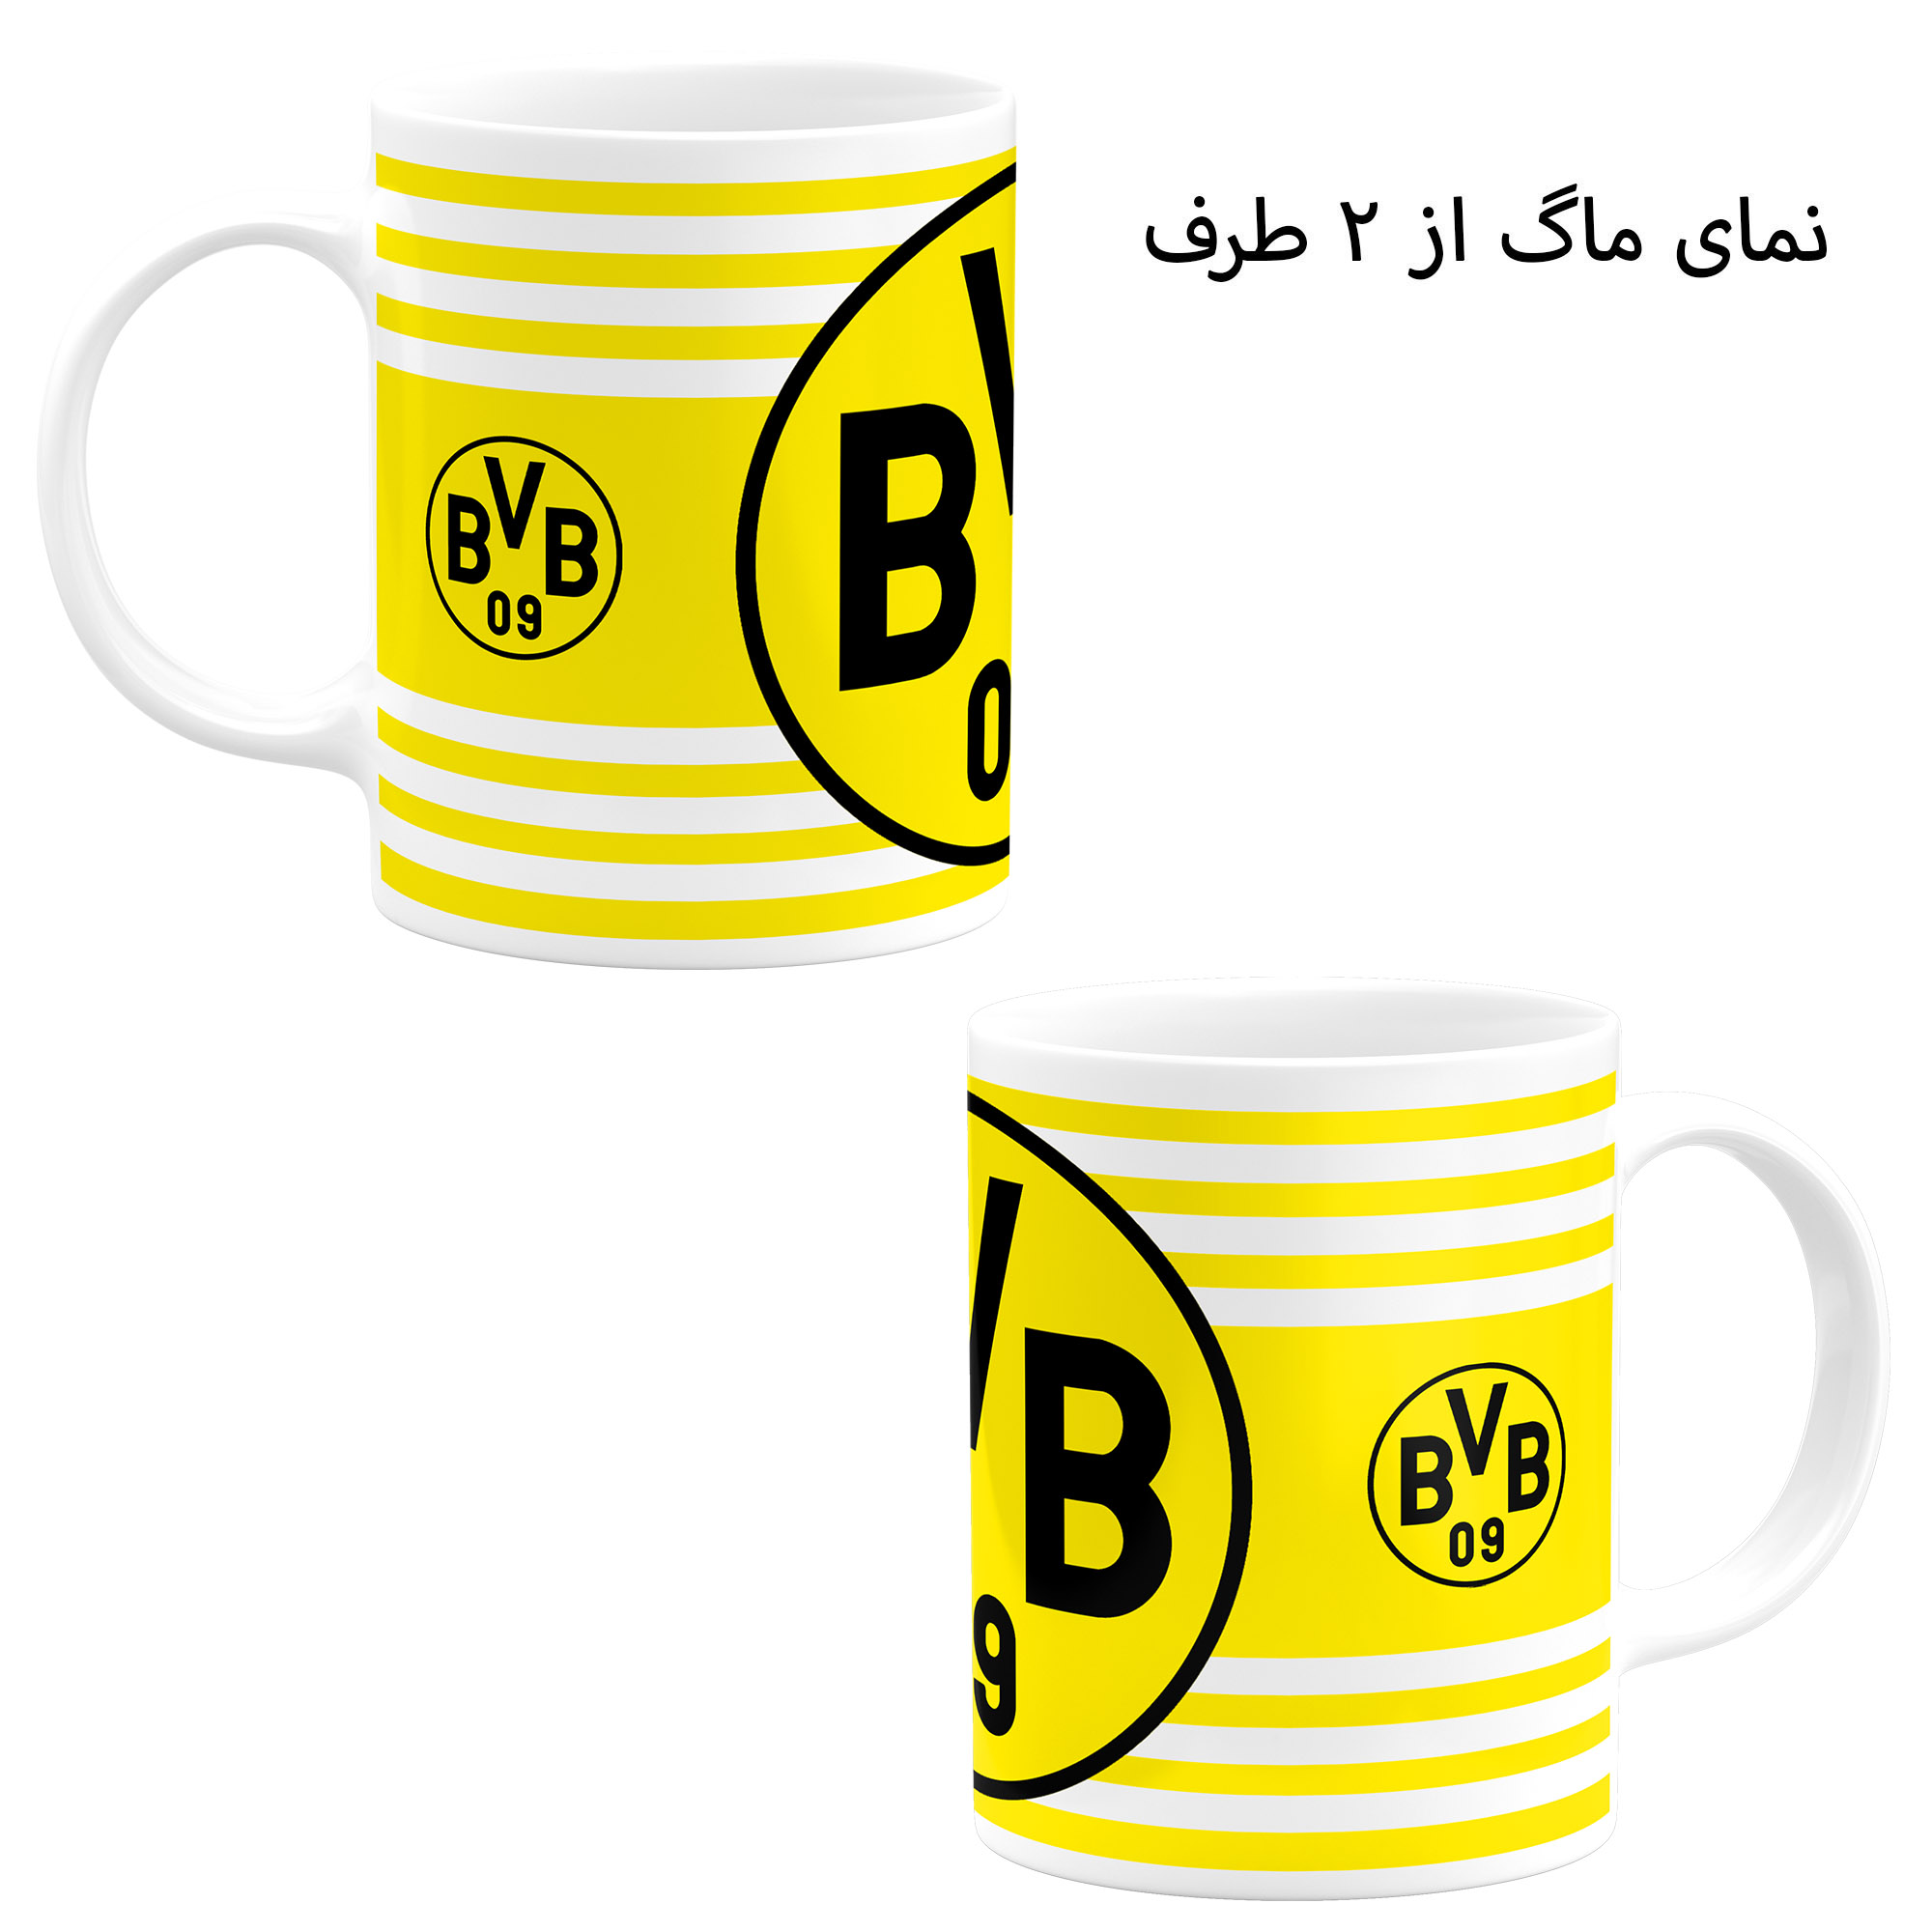 ست هدیه ماگ طرح باشگاه فوتبال بروسیا دورتموند مدل Borussia Dortmund F.C کد B1